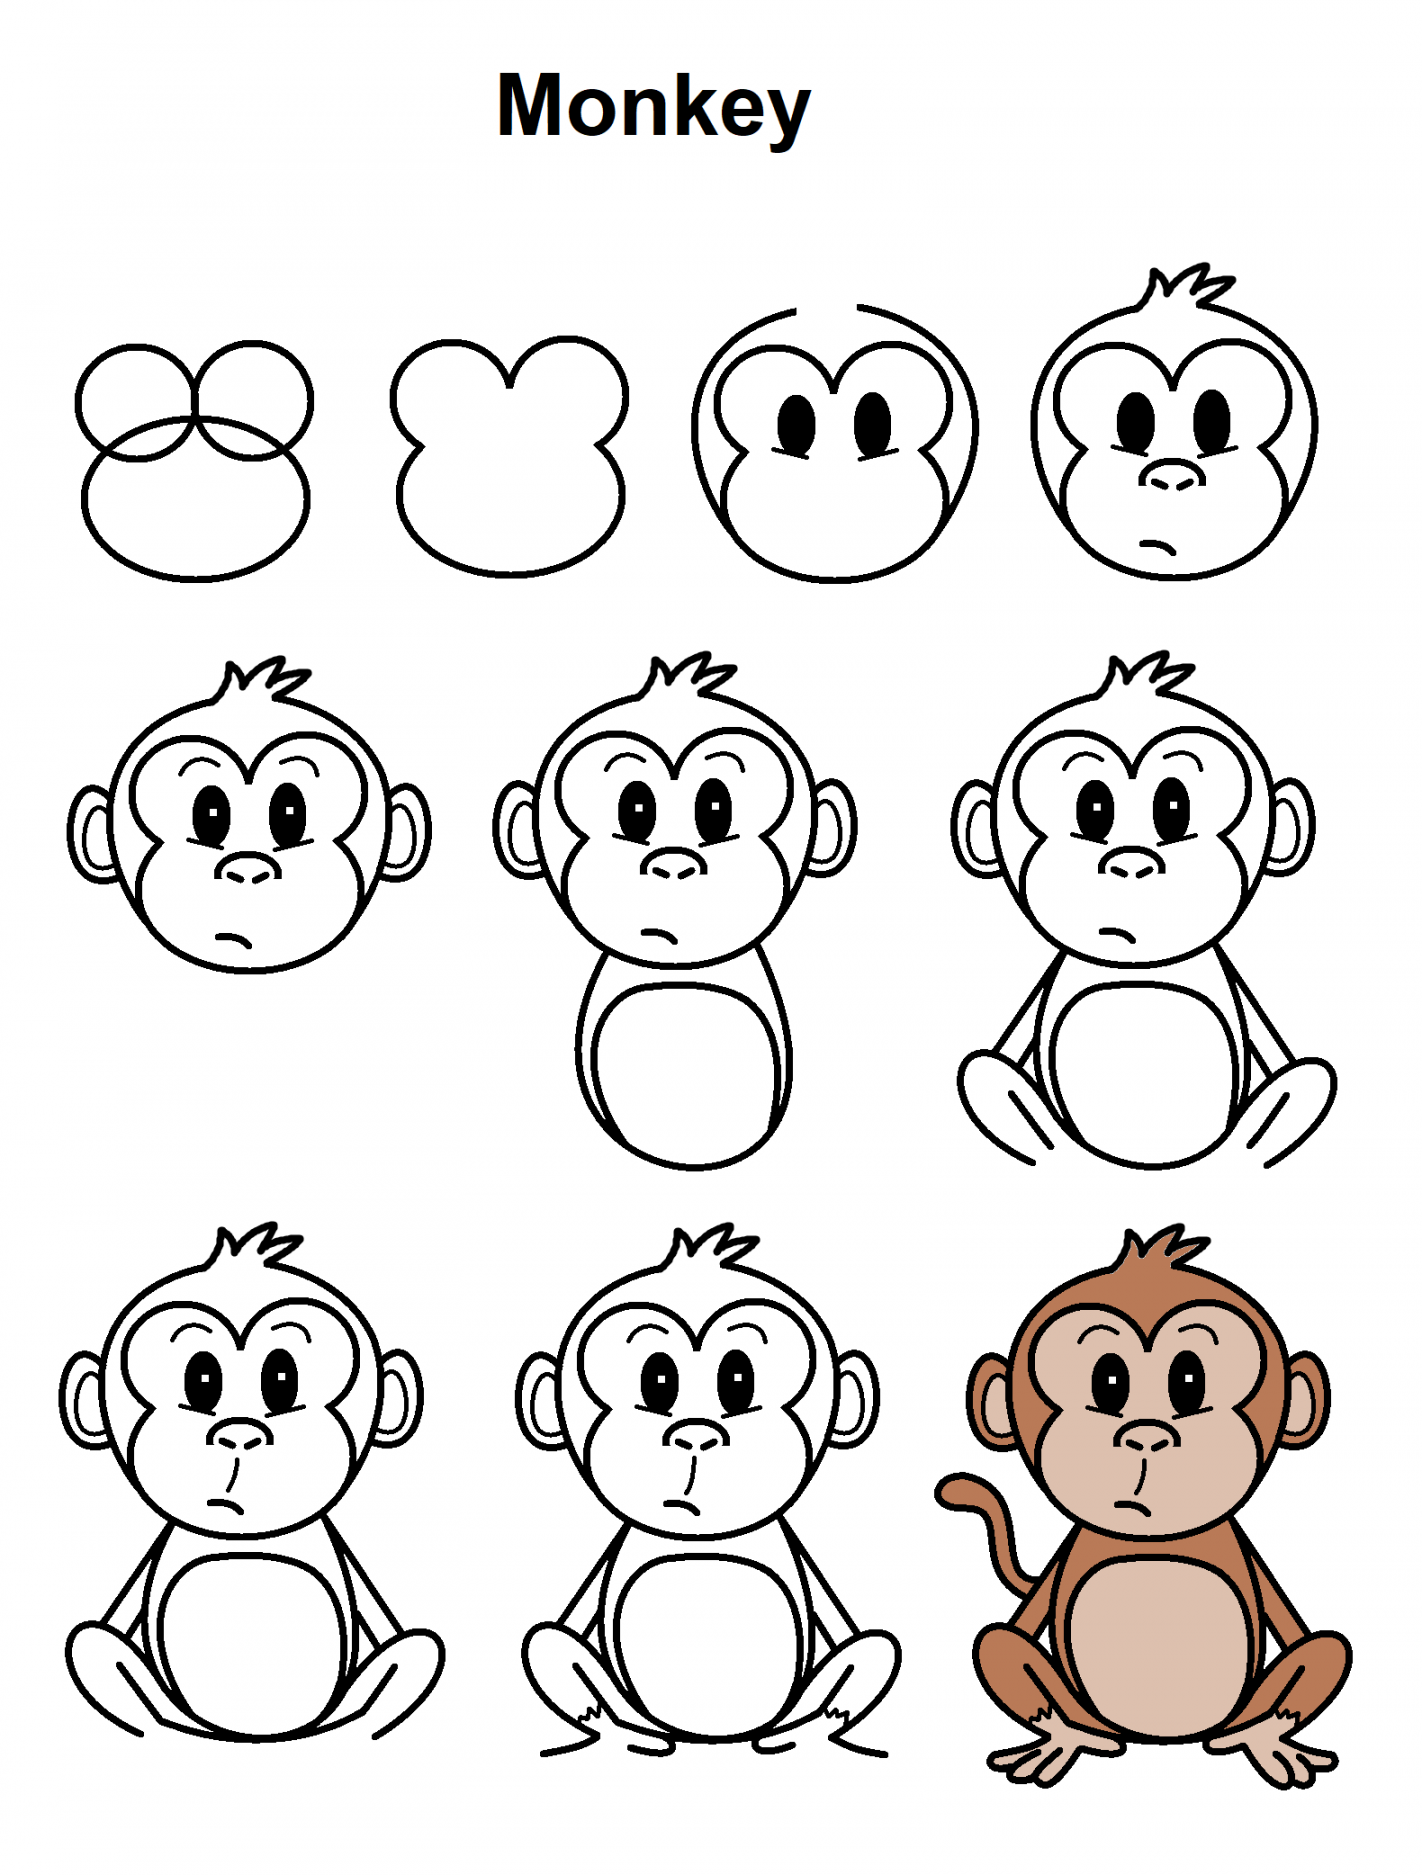 Monkey  Monkey drawing, Easy cartoon drawings, Cute easy drawings